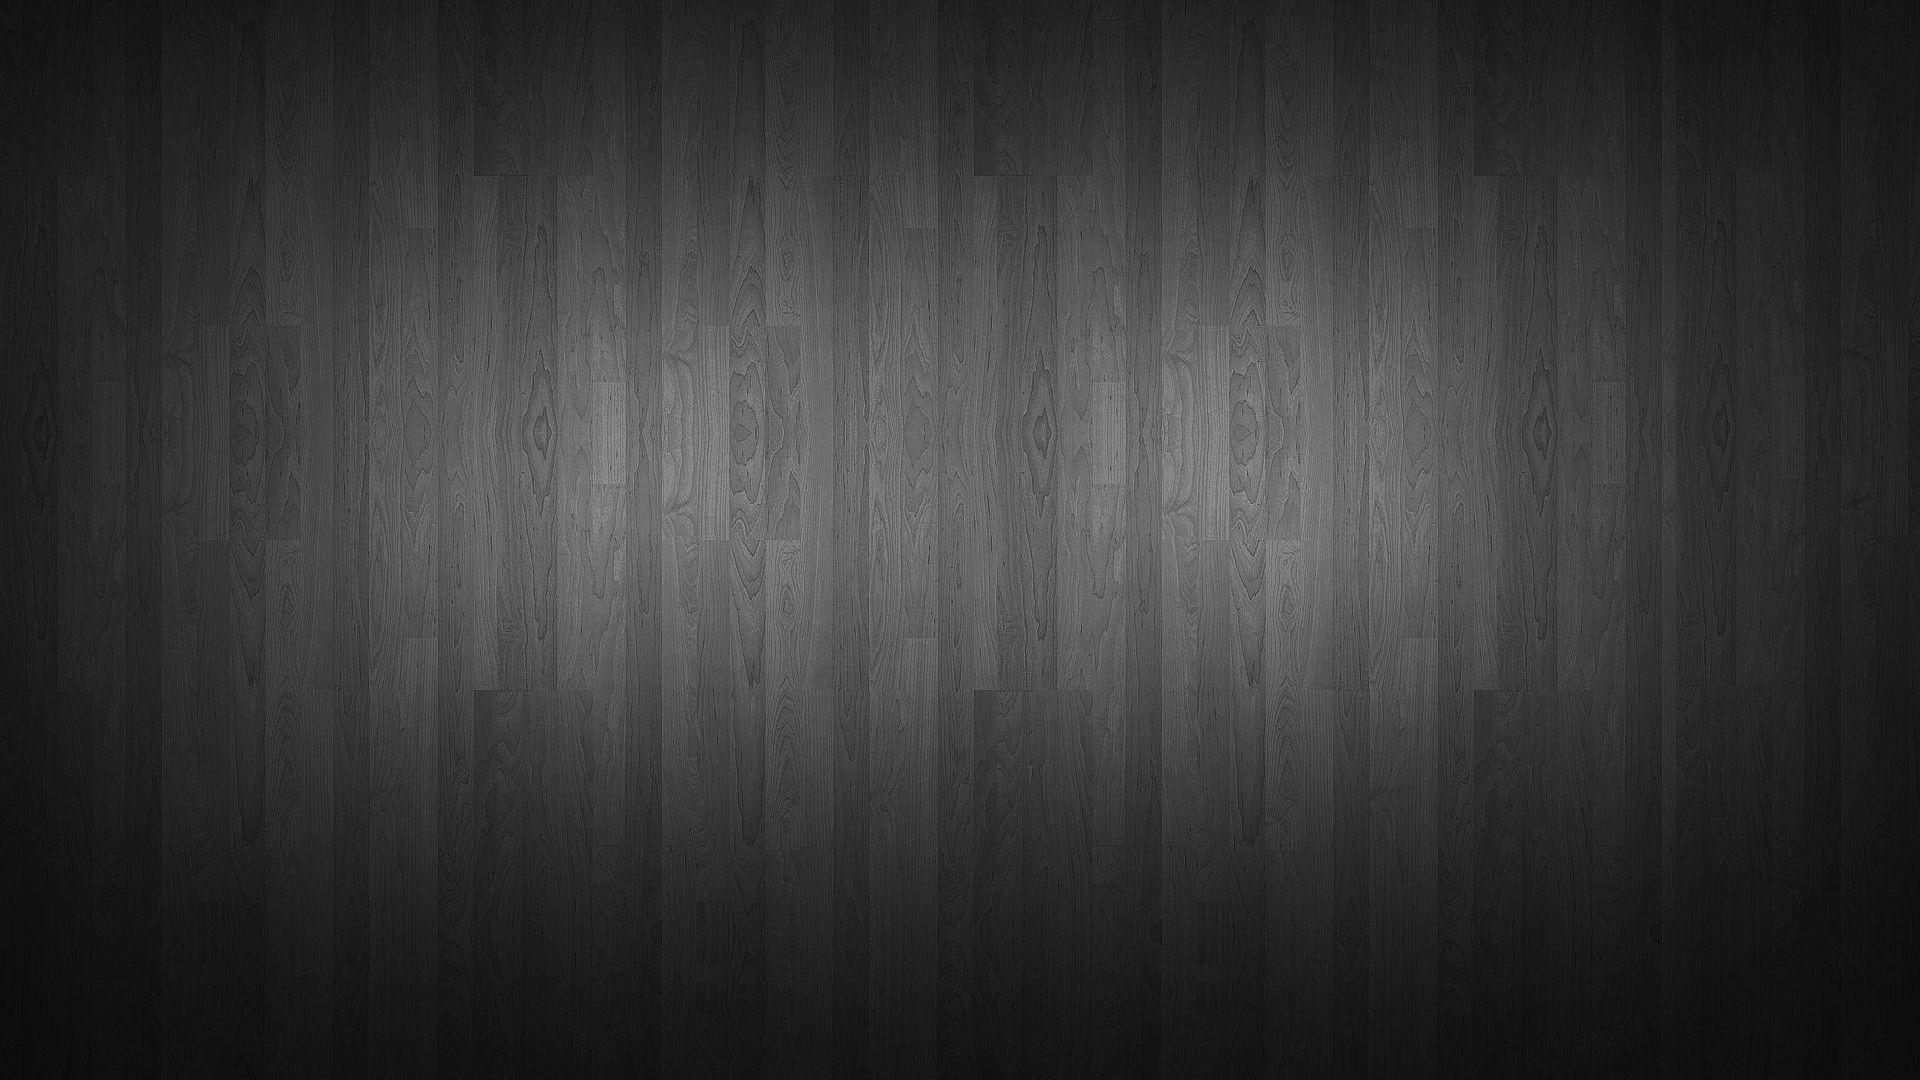 Hình nền gỗ đen: Hình nền gỗ đen là một lựa chọn đầy phong cách cho máy tính của bạn. Với màu sắc tối trang trọng, đem lại cảm giác bí ẩn và quyền lực, người dùng không thể bỏ qua hình ảnh đẹp với kết cấu gỗ đen cao cấp này.